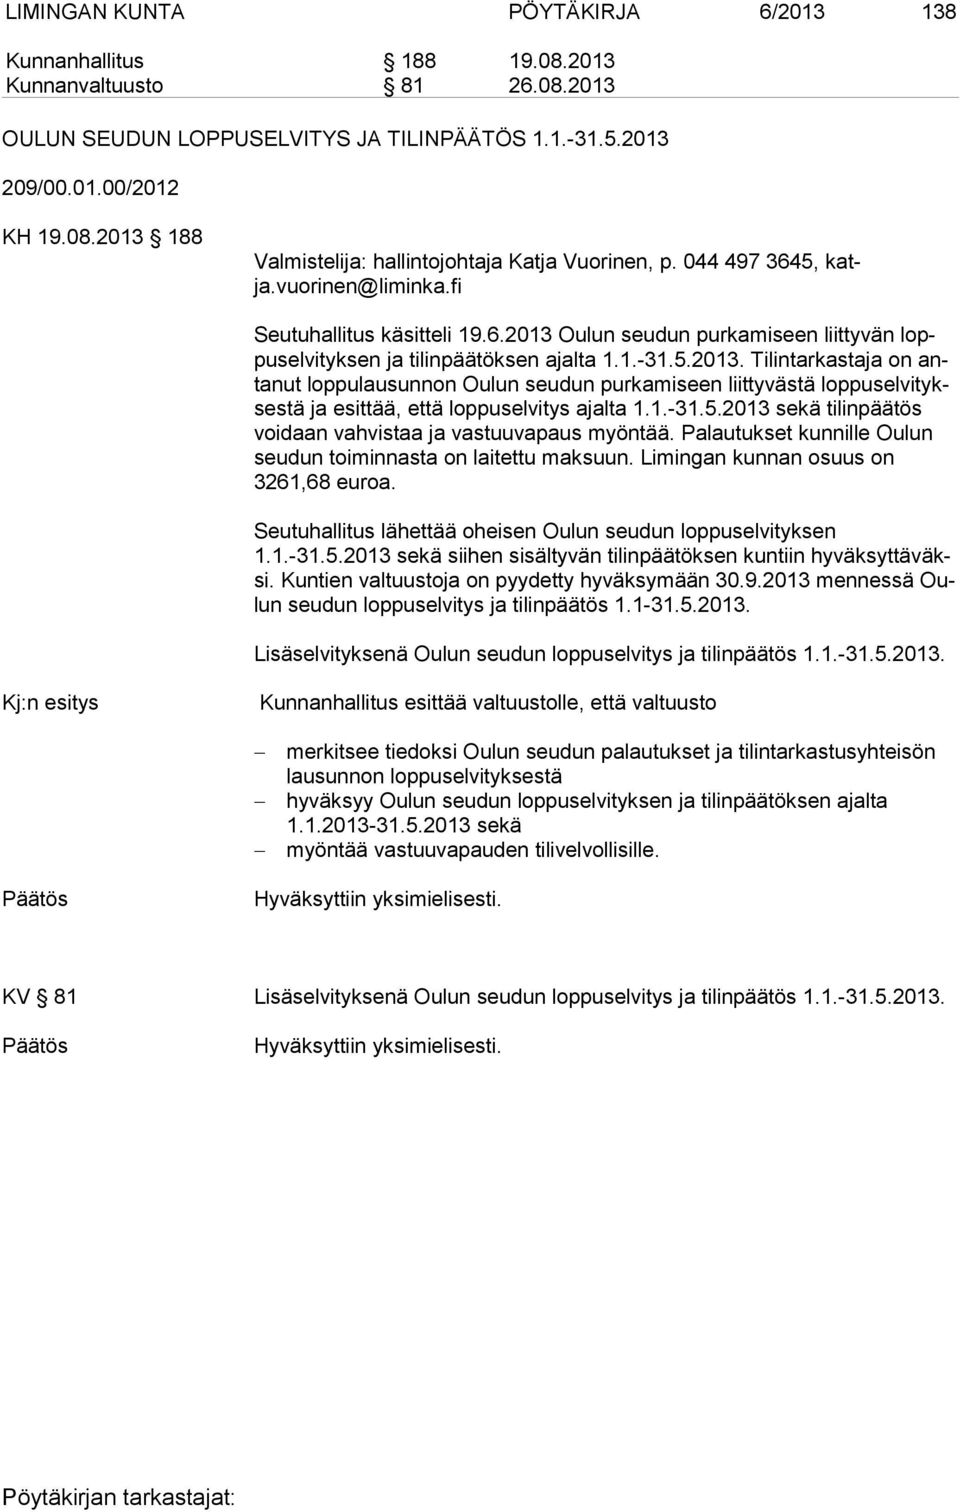 Oulun seudun purkamiseen liittyvän loppu sel vi tyk sen ja tilinpäätöksen ajalta 1.1.-31.5.2013.